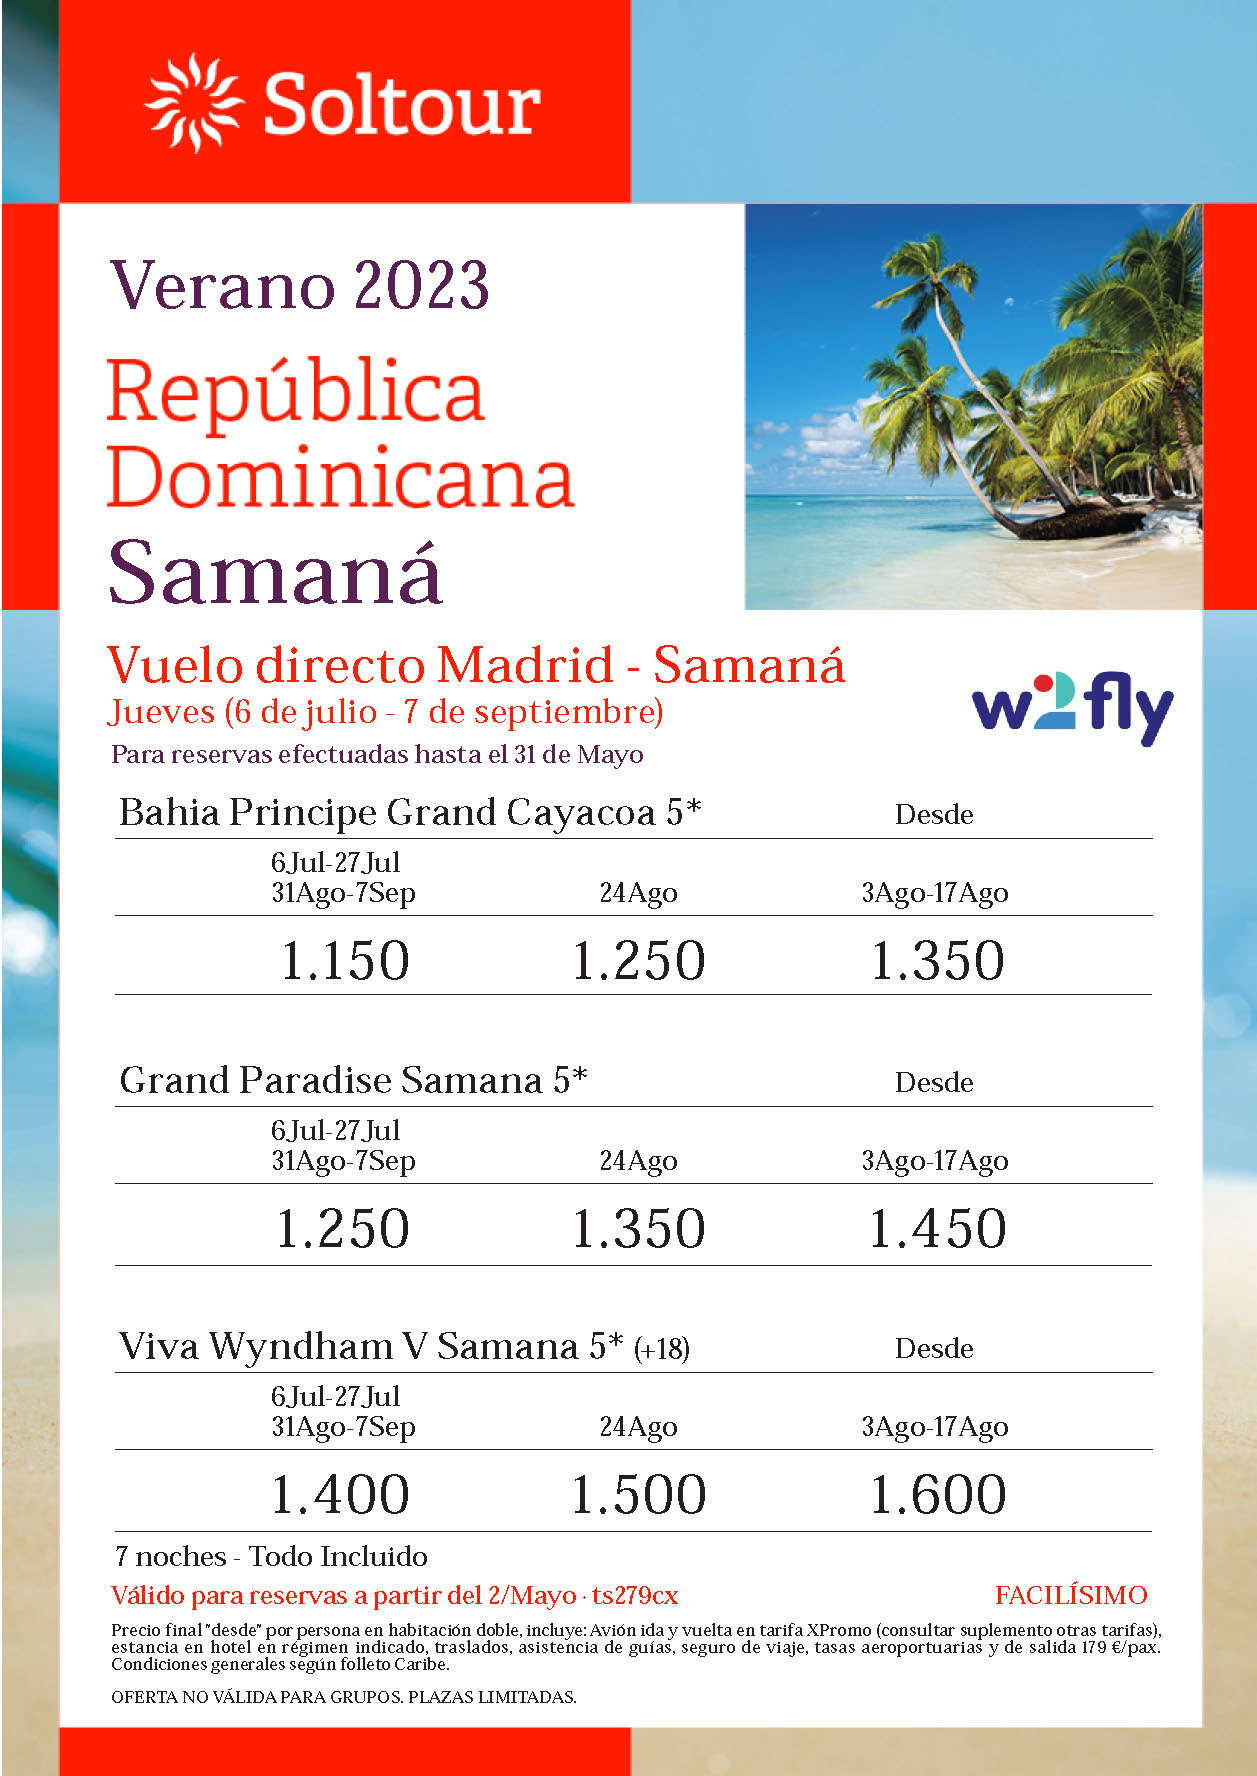 Oferta Soltour Verano 2023 Republica Dominicana Samana Hotel Bahia Principe 5 estrellas Todo Incluido salidas en vuelo directo desde Madrid